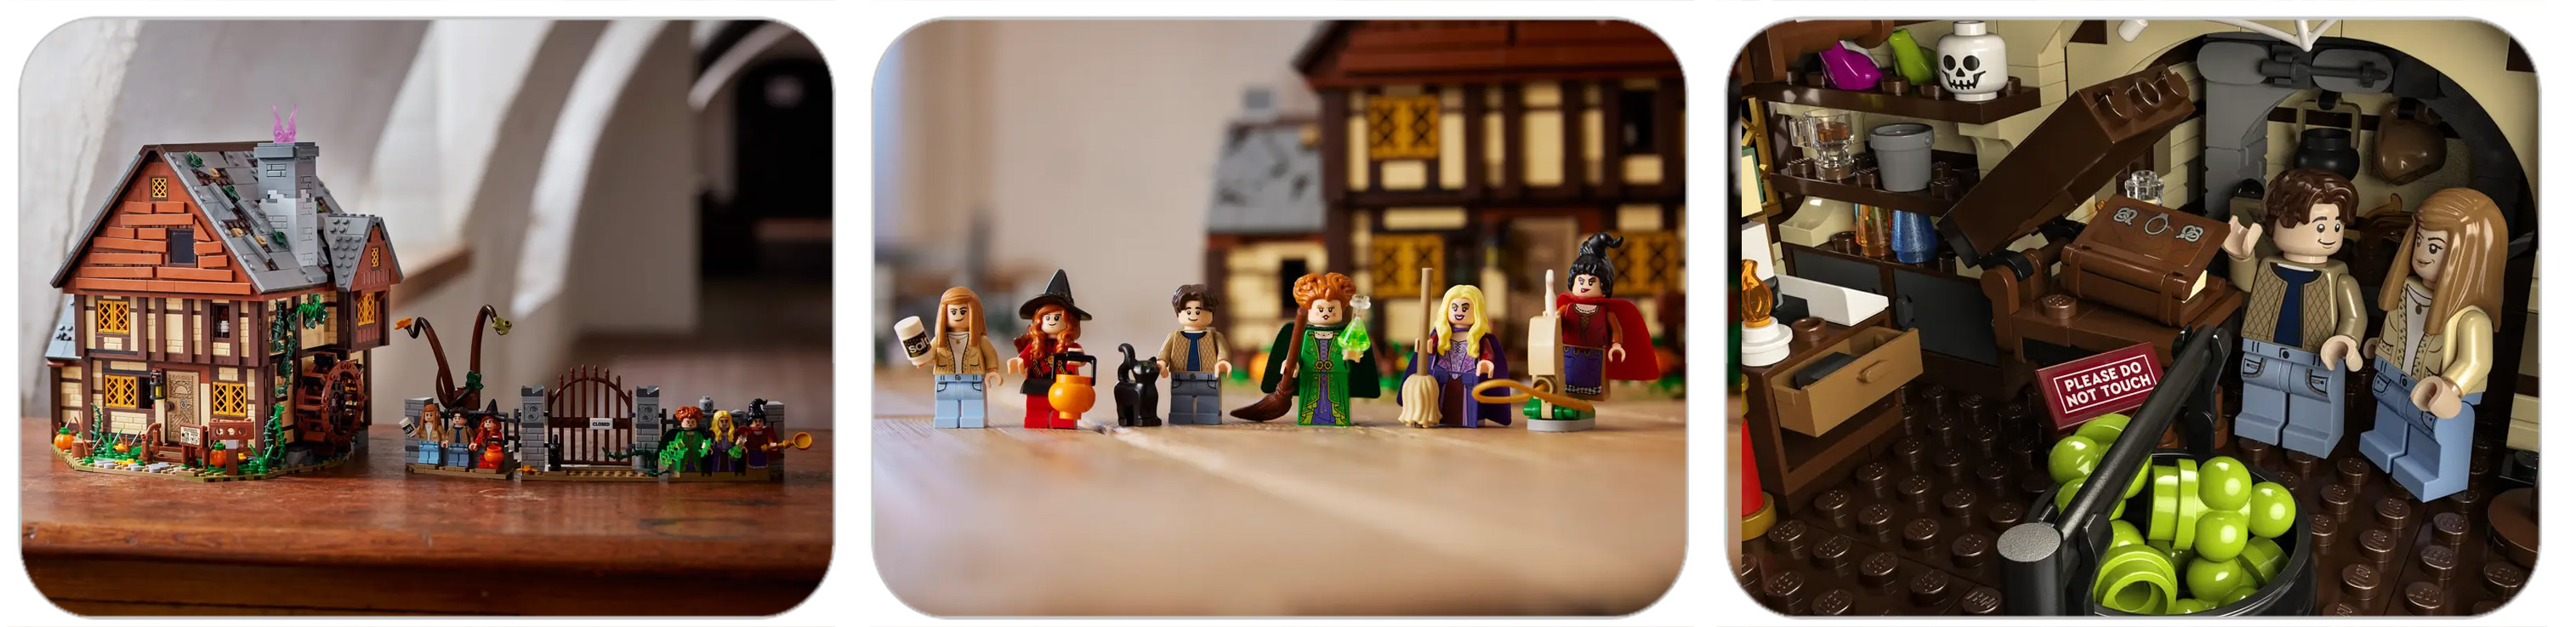 Hocus Pocus LEGO set